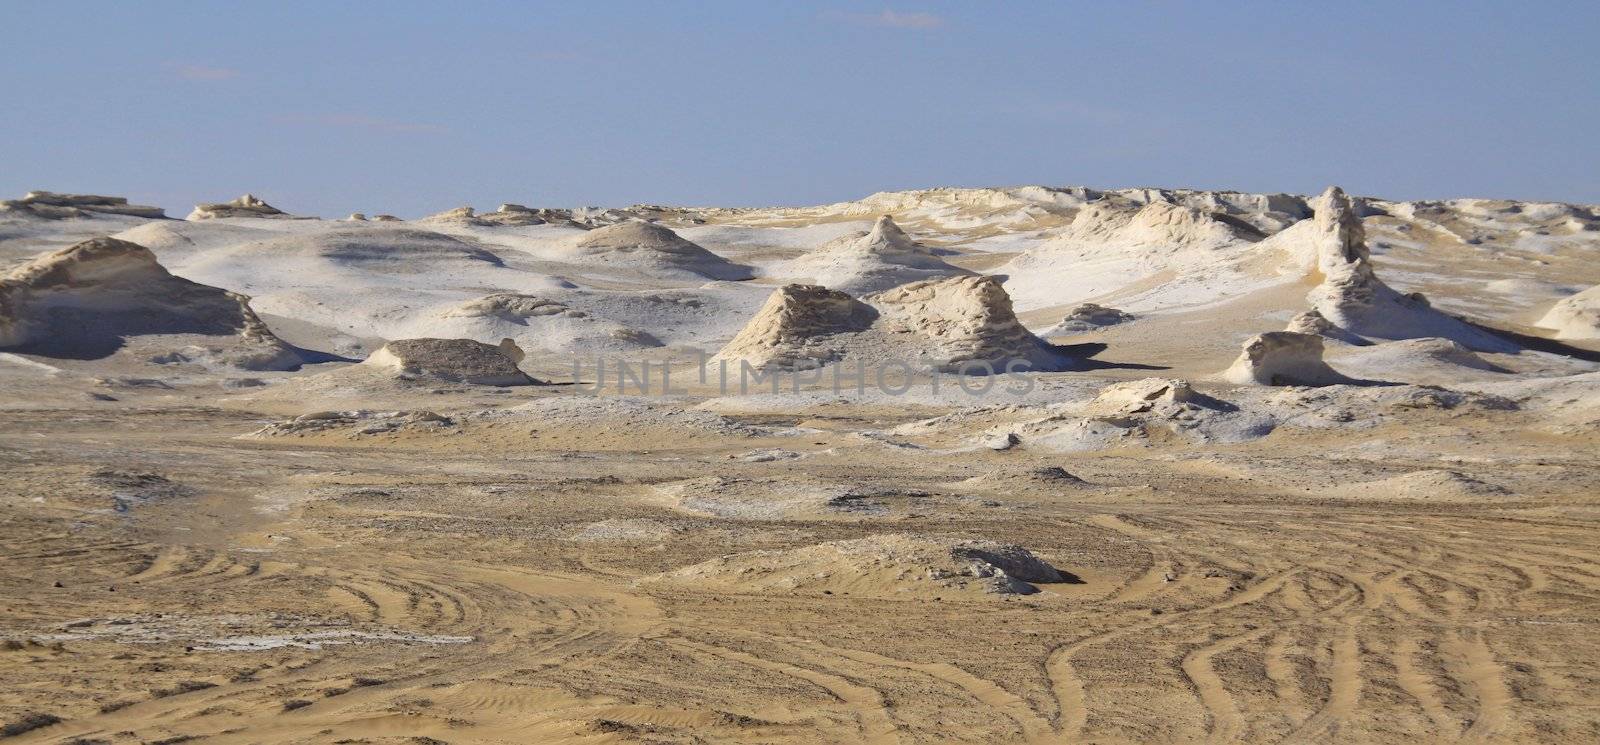 White Desert, Egypt  by jnerad